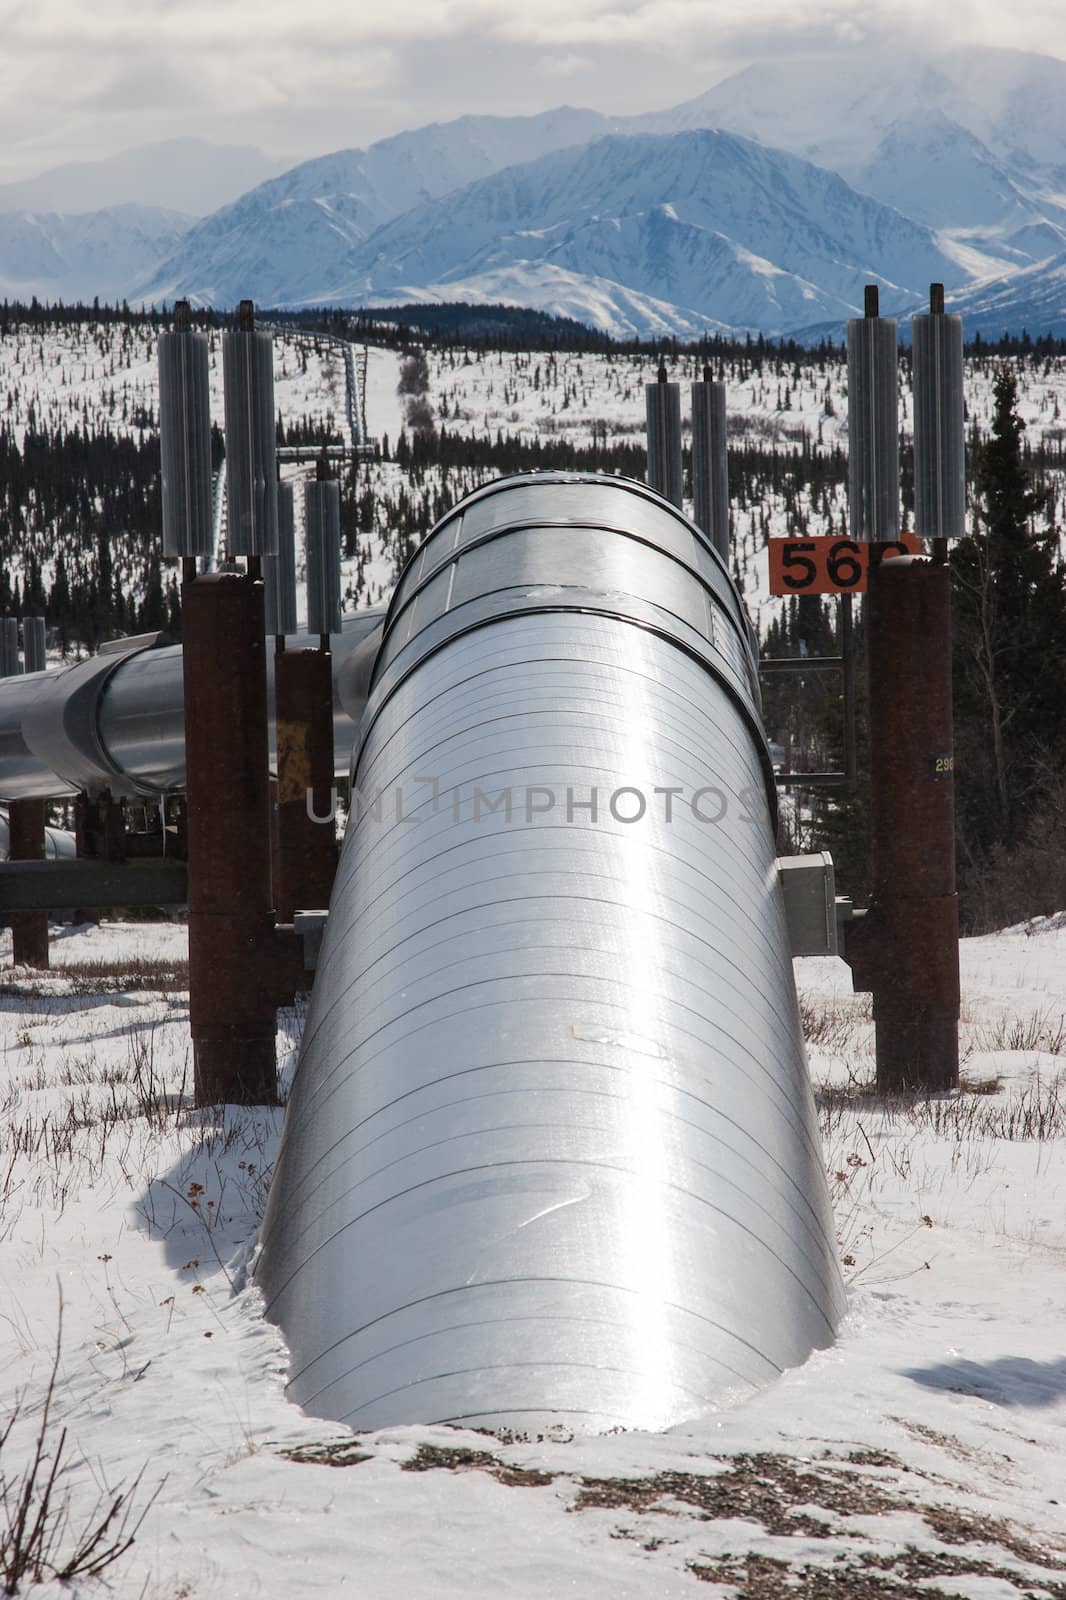 Oil Pipeline in Wilderness by studio49